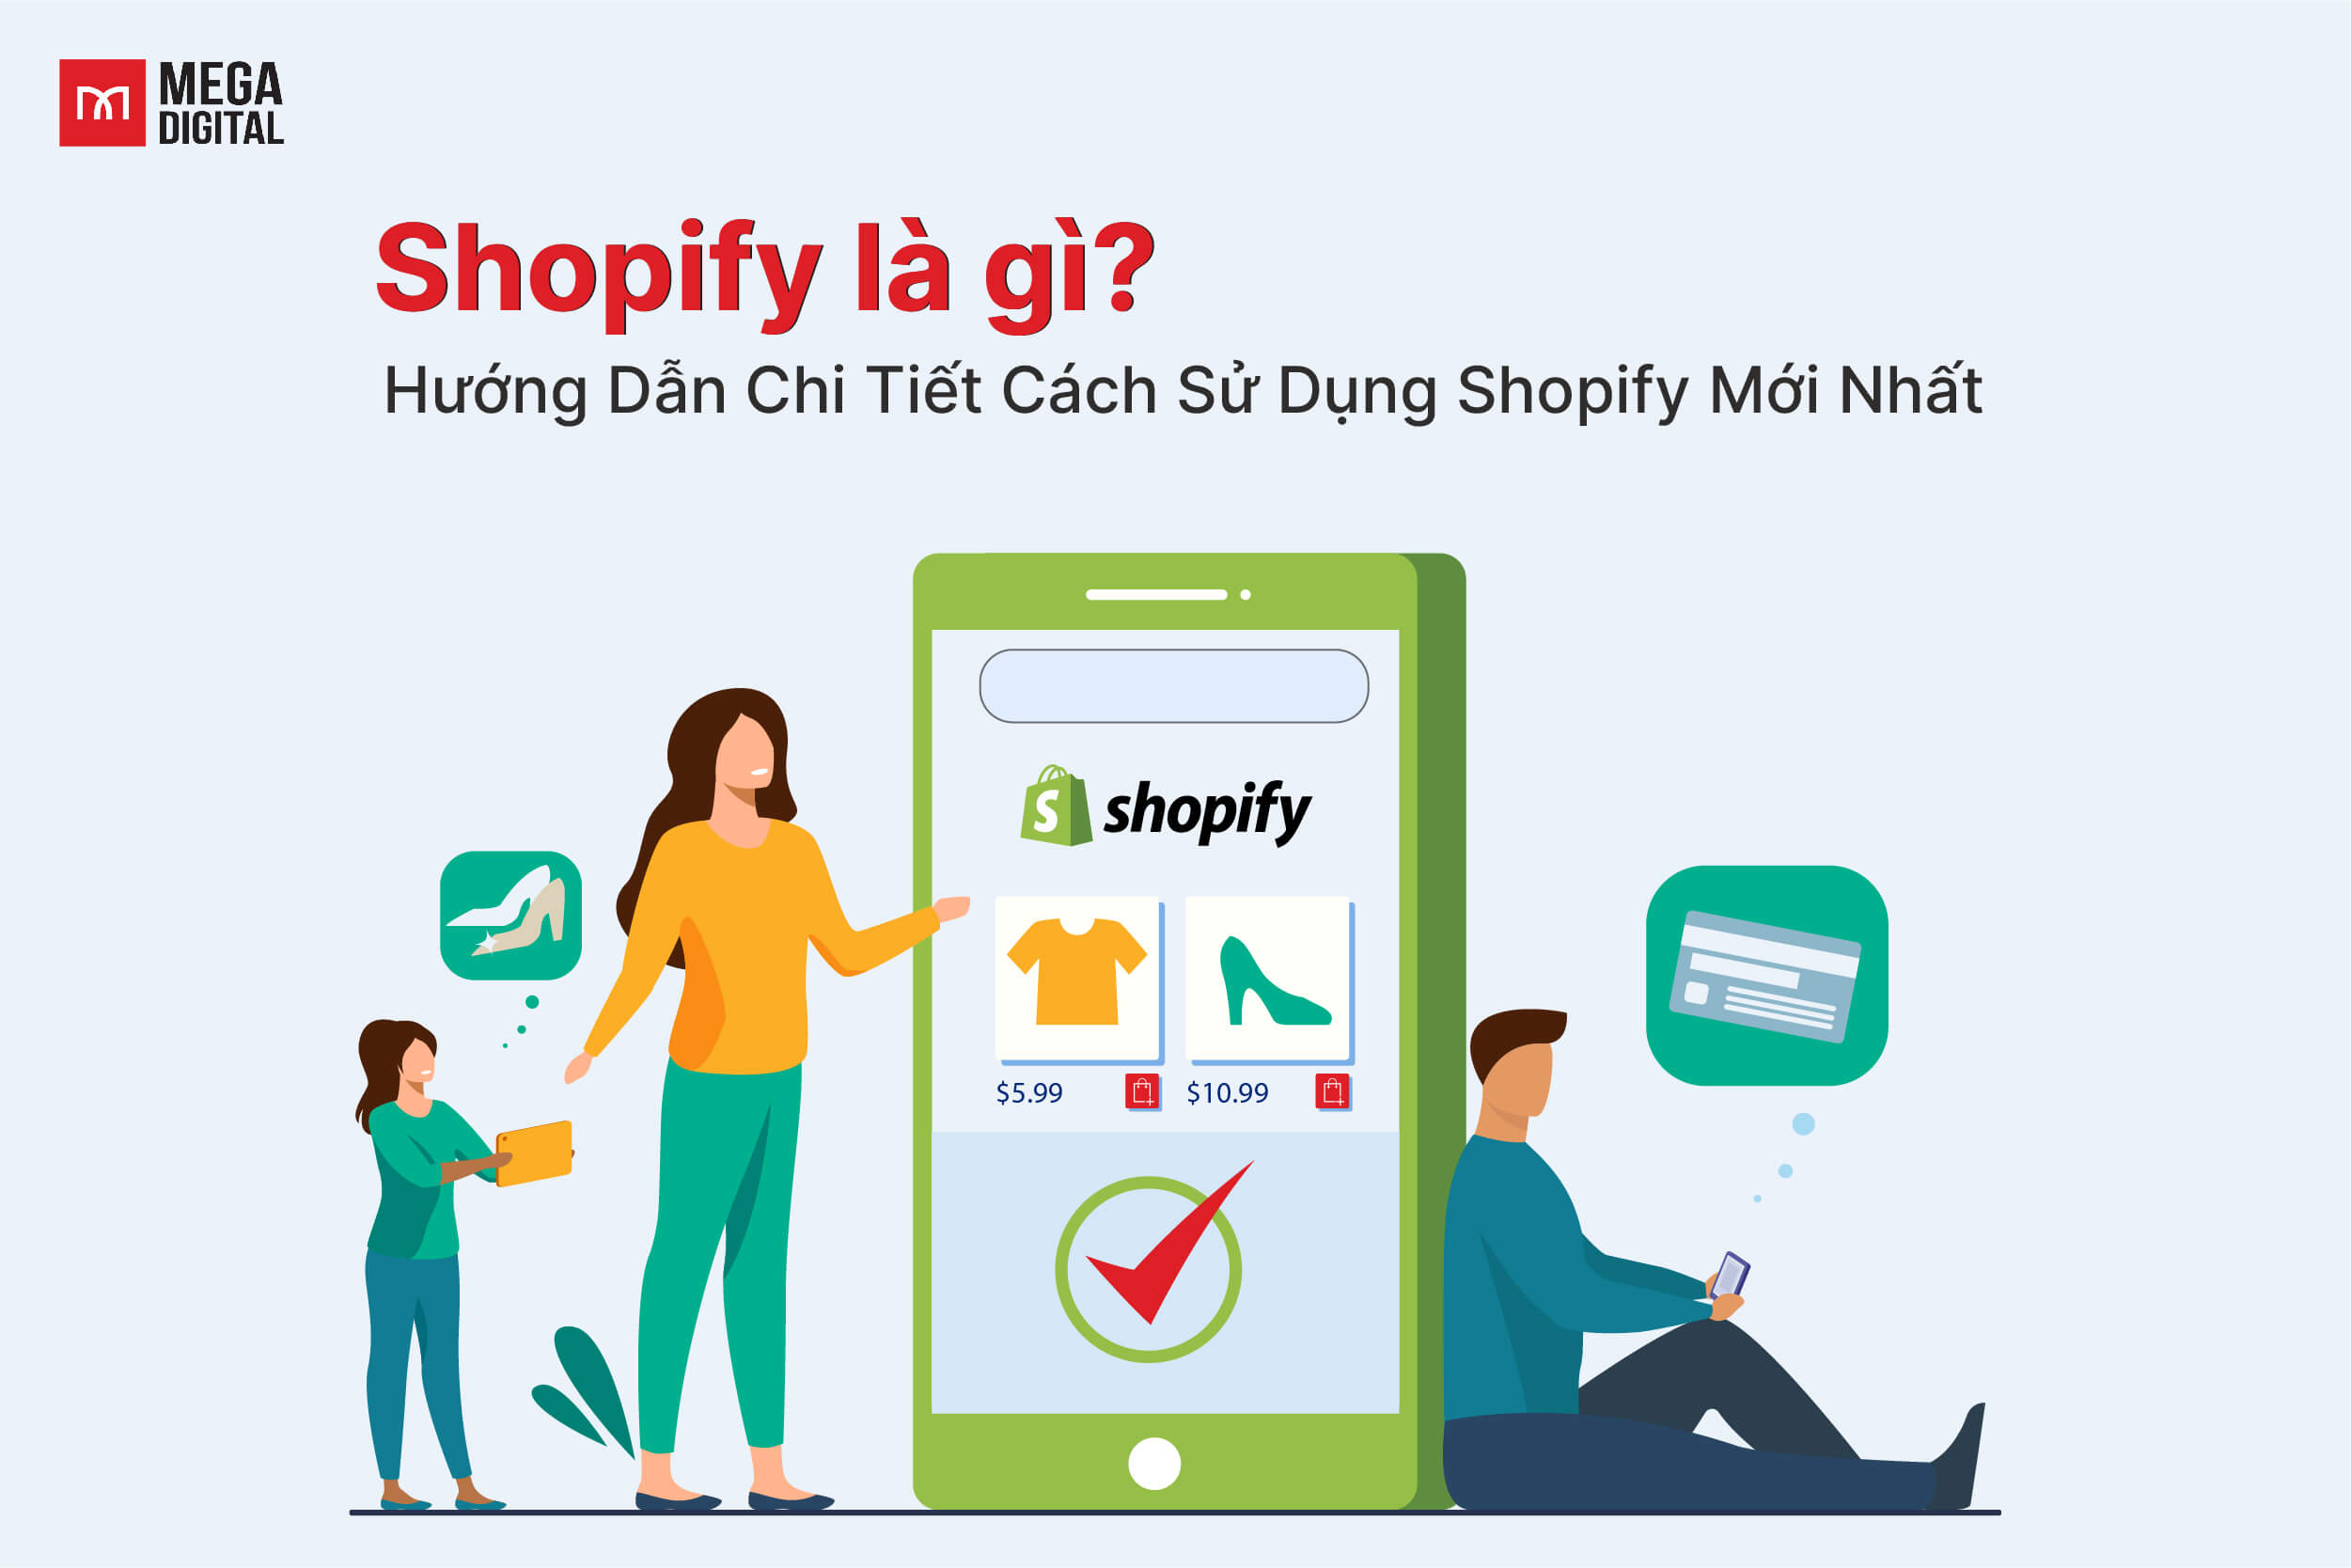 Dropshipping Shopify là gì? Hướng dẫn mở gian hàng trên Shopify